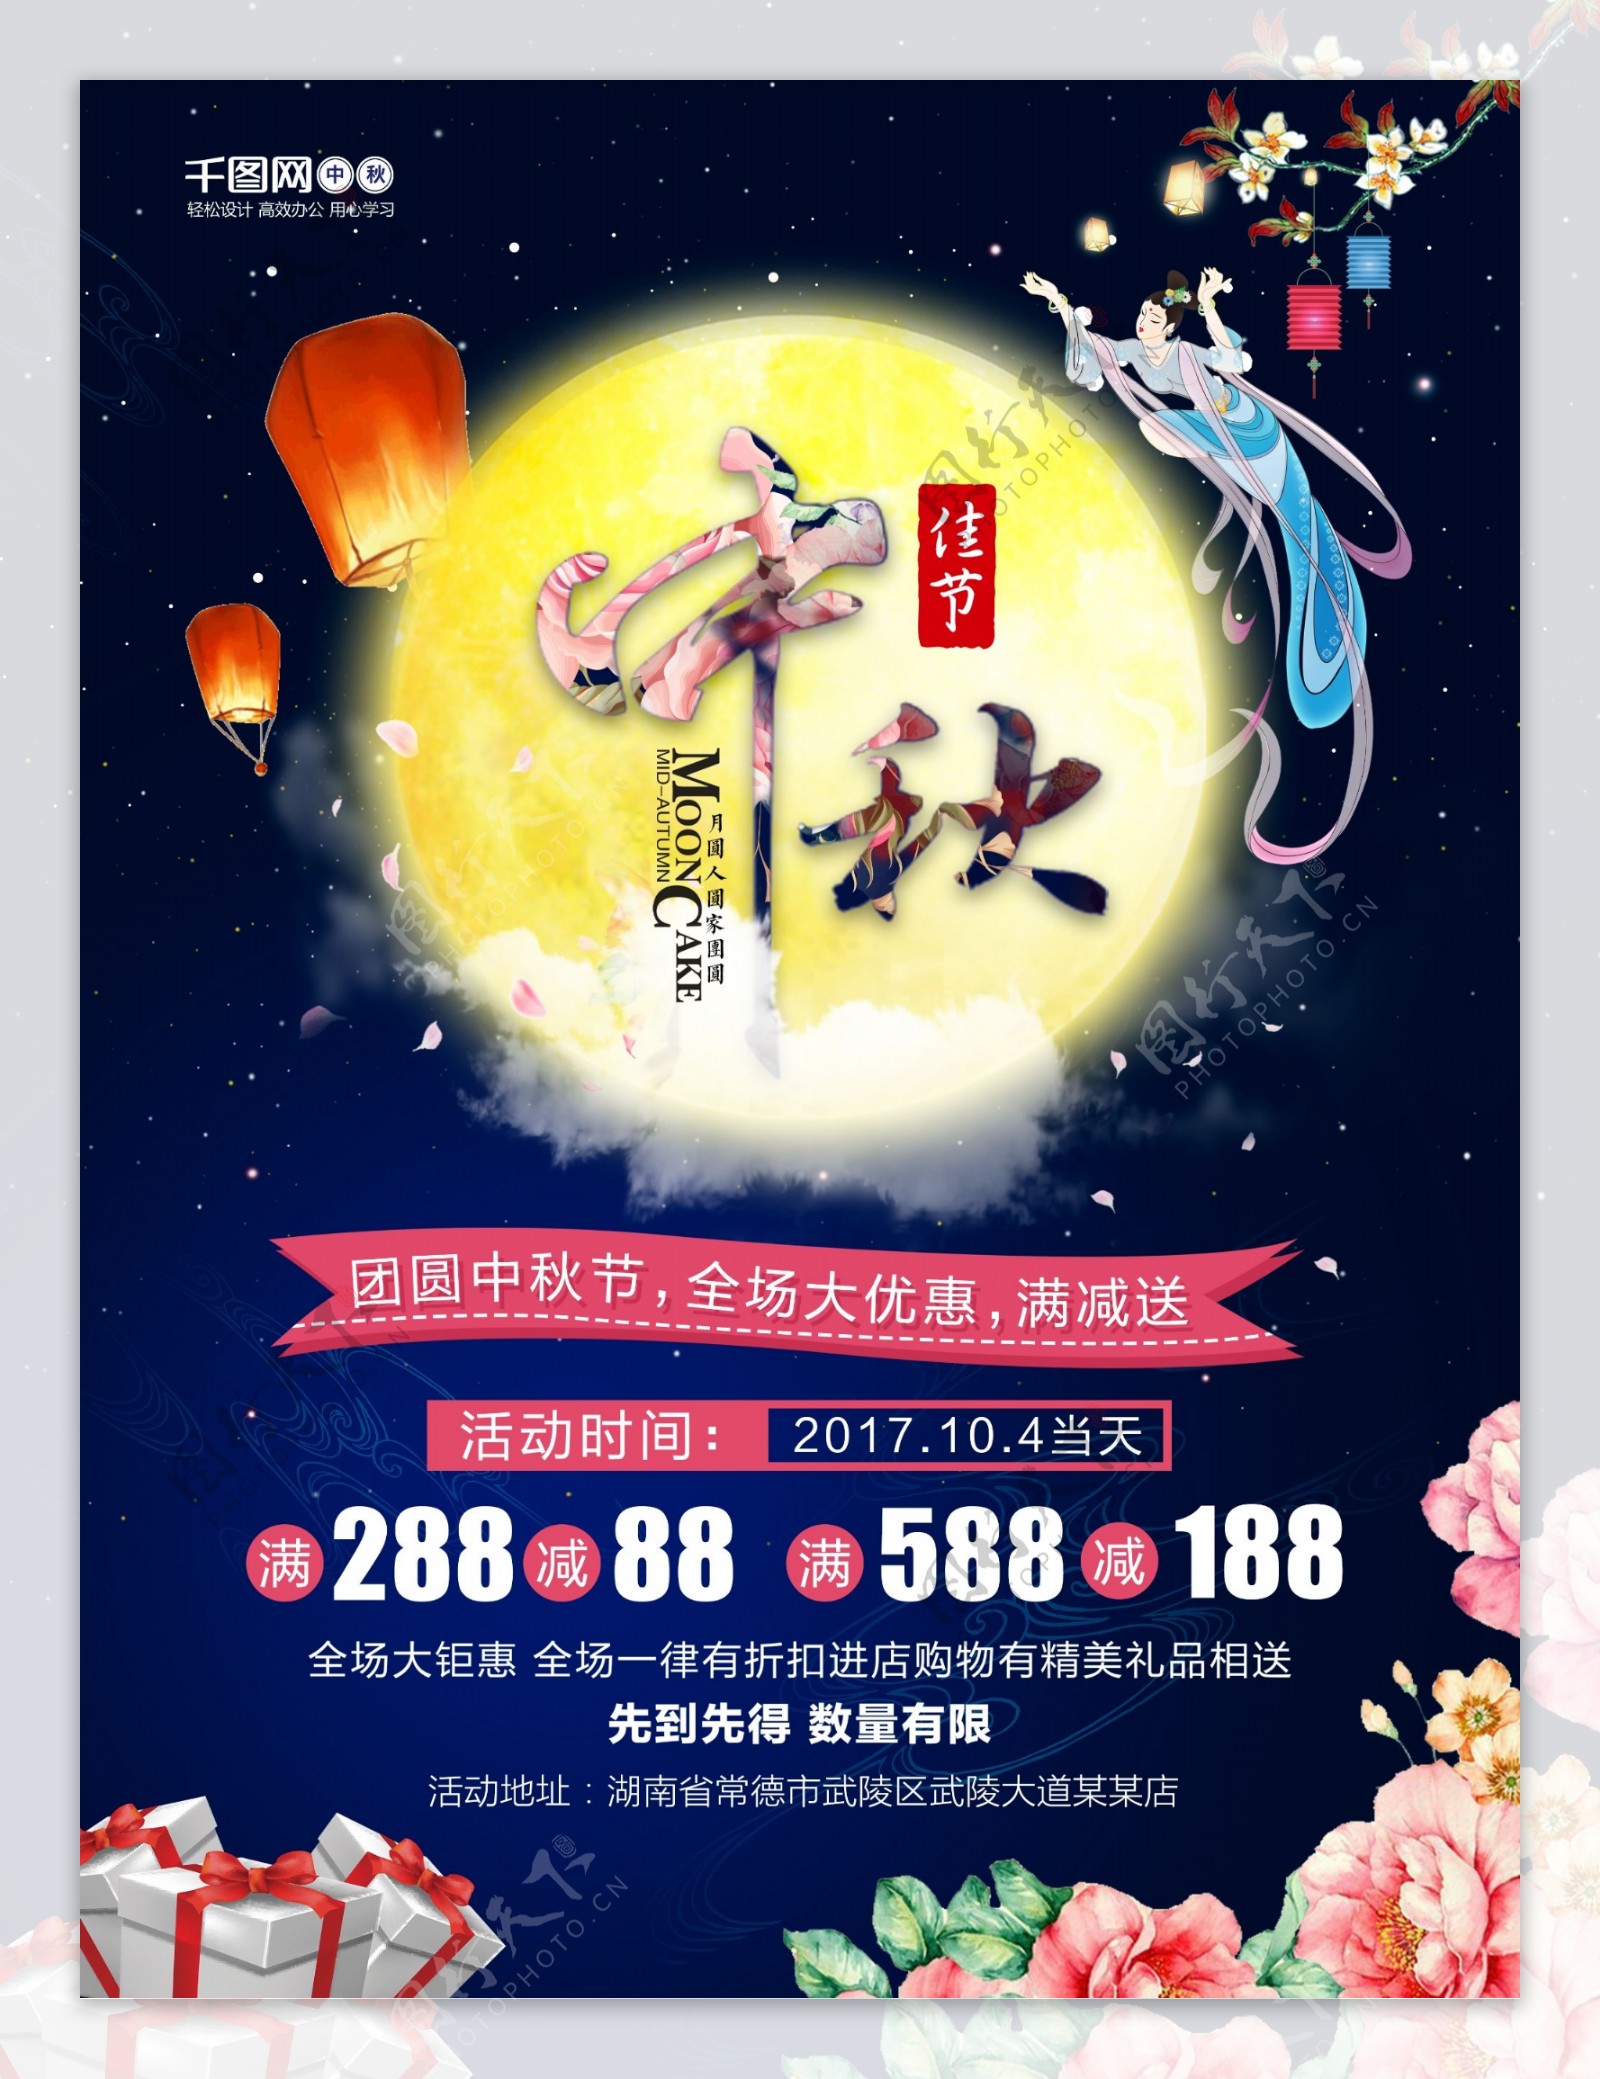 中国传统节日中秋佳节团圆夜促销活动海报